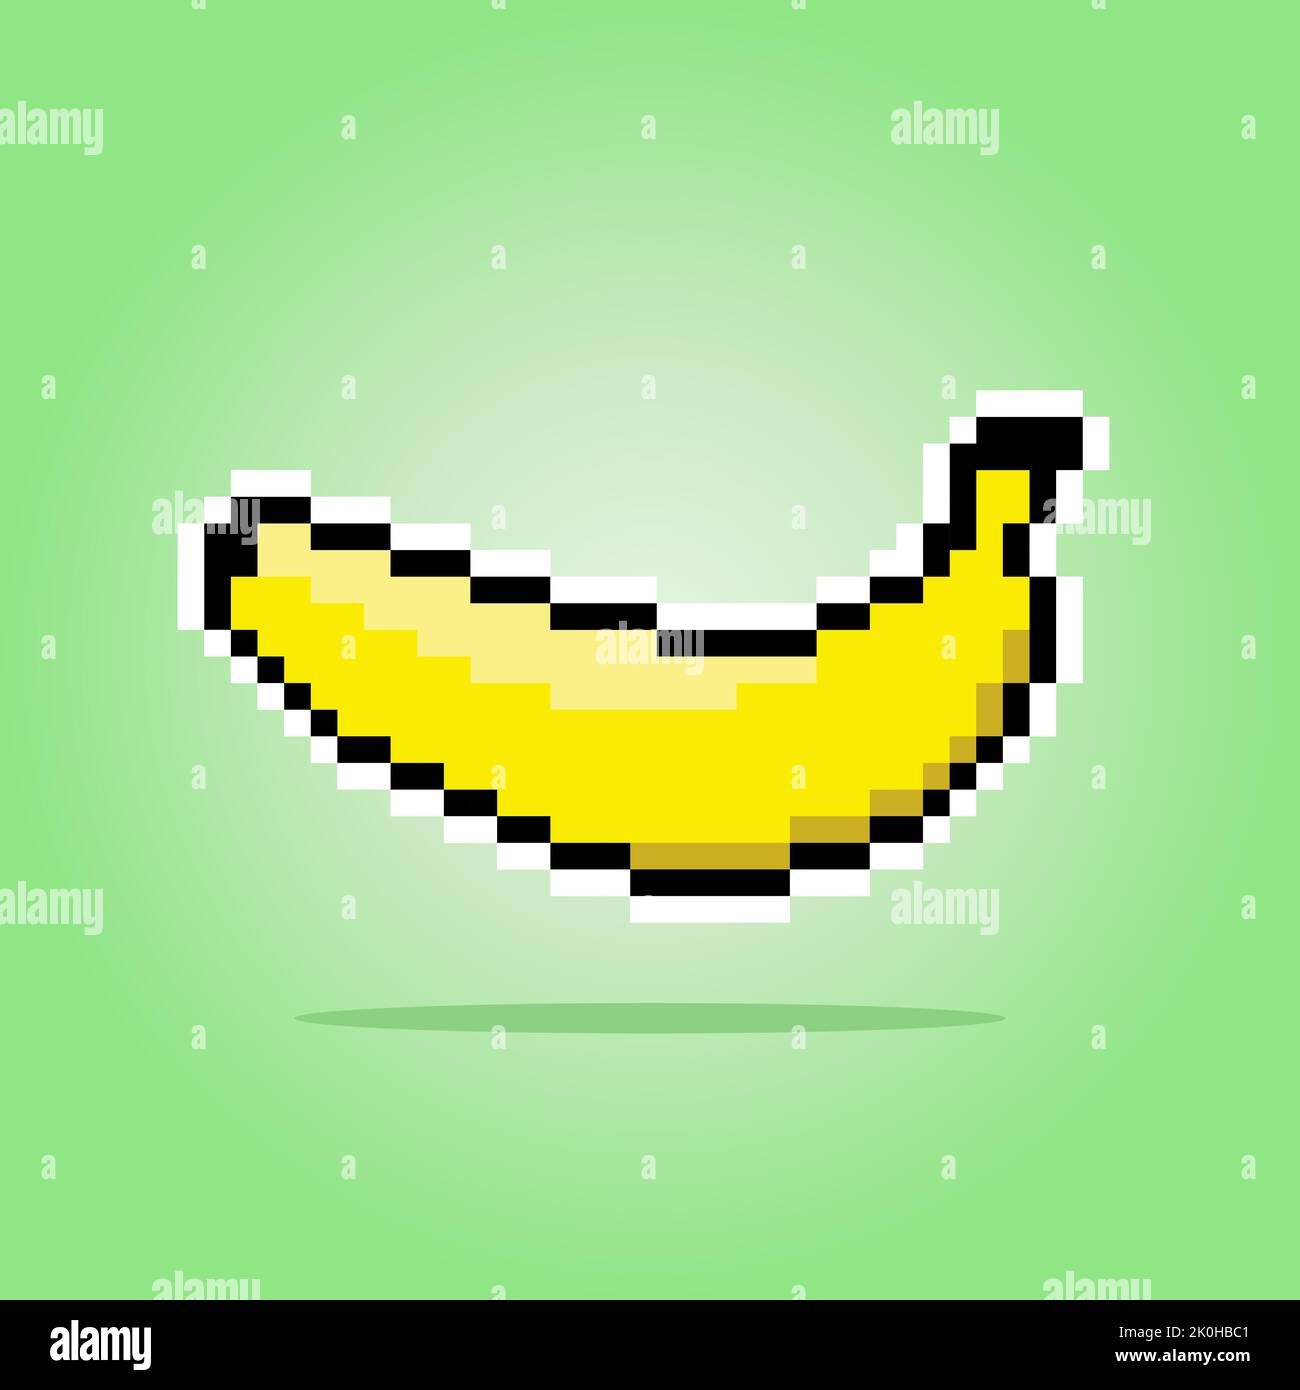 Banana pixel. Illustrazione vettoriale delle risorse di gioco a 8 bit. Illustrazione Vettoriale